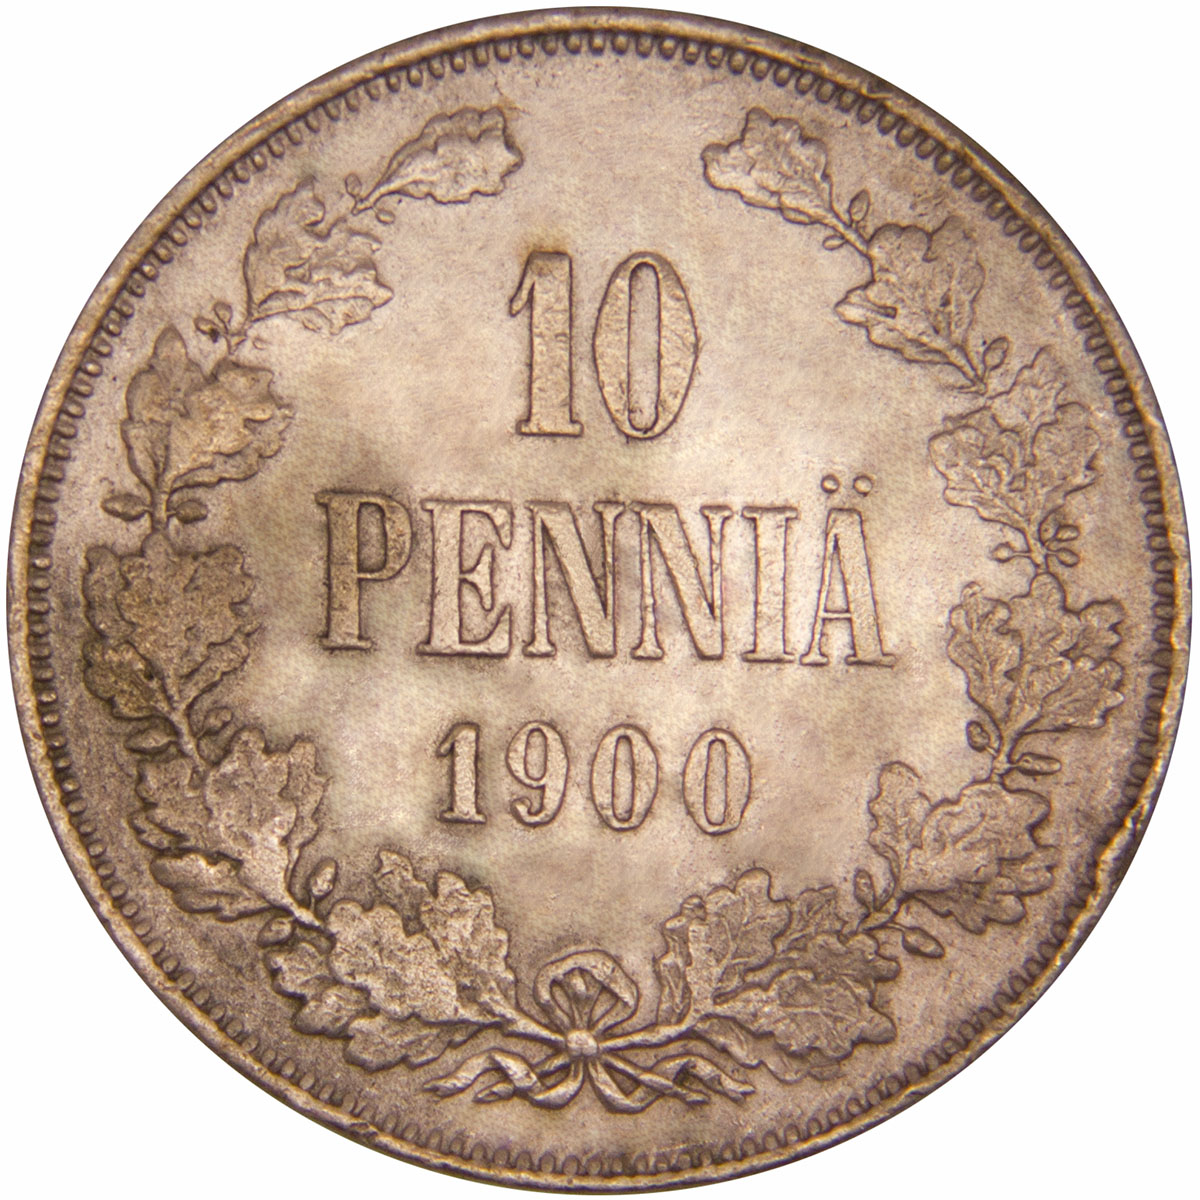 Монета номиналом 10 пенни. Сохранность VF. Россия для Финляндии, 1900 год